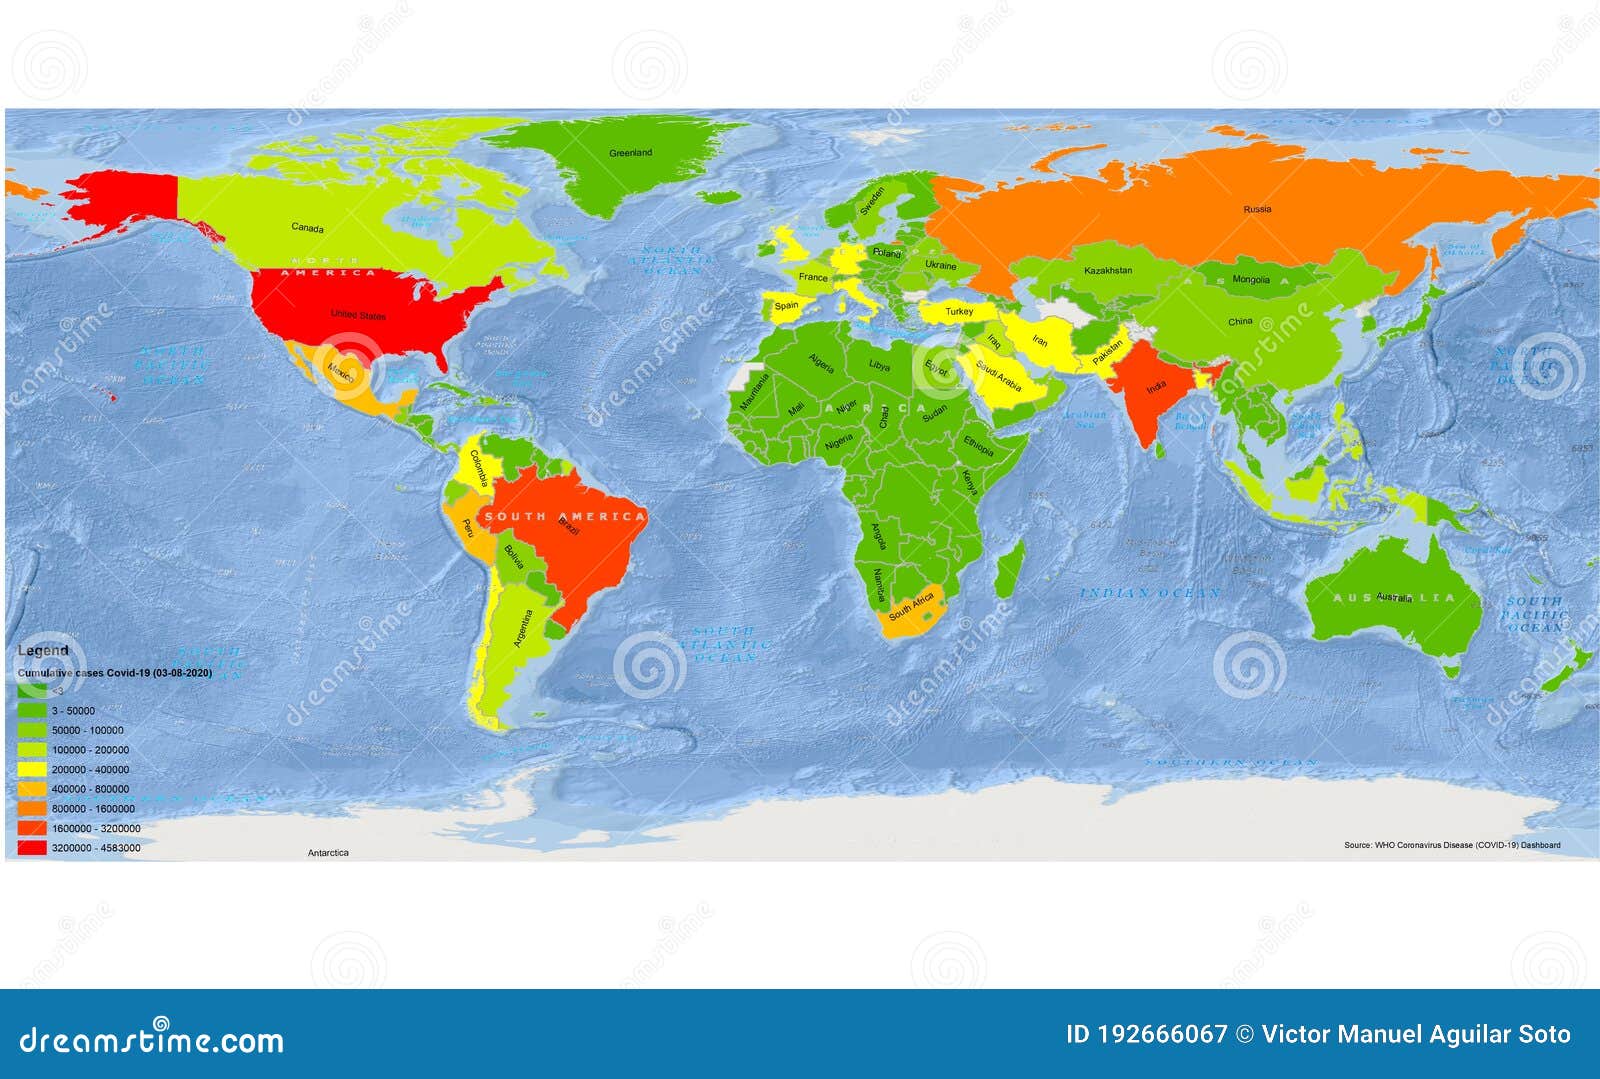 mapa coronavirus spread on the world